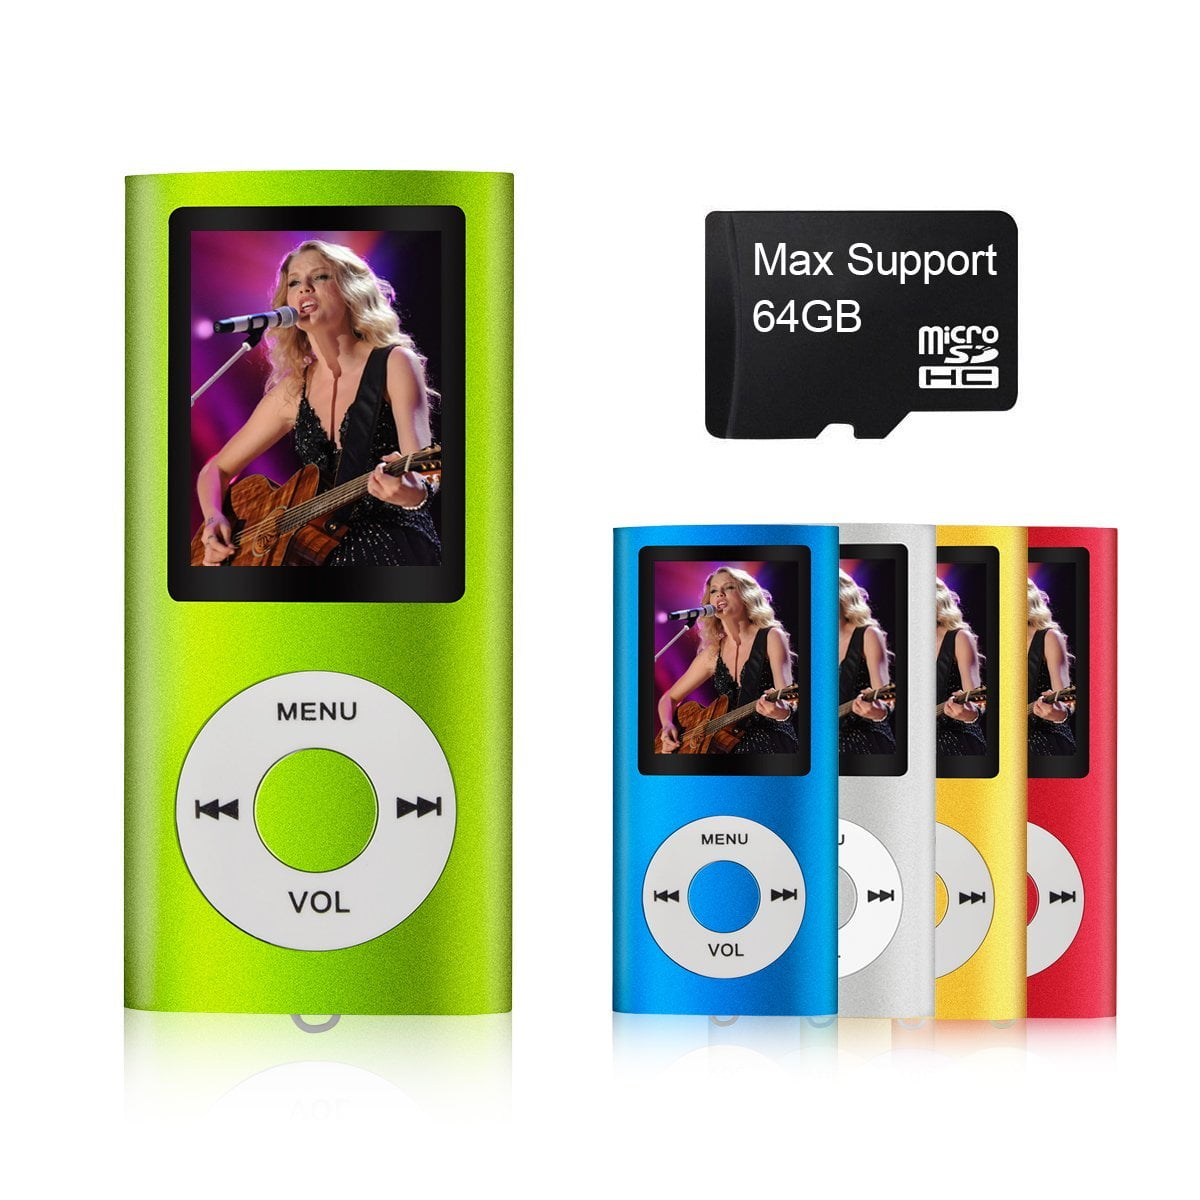 MAX Apoyo 64 GB Micro SD Card Compacto y portátil MP3/MP4 Reproductor con Visor de Fotos e-Book Lector y grabadora de Voz y Radio FM Video película en Color Naranja  Digital mymahdi  